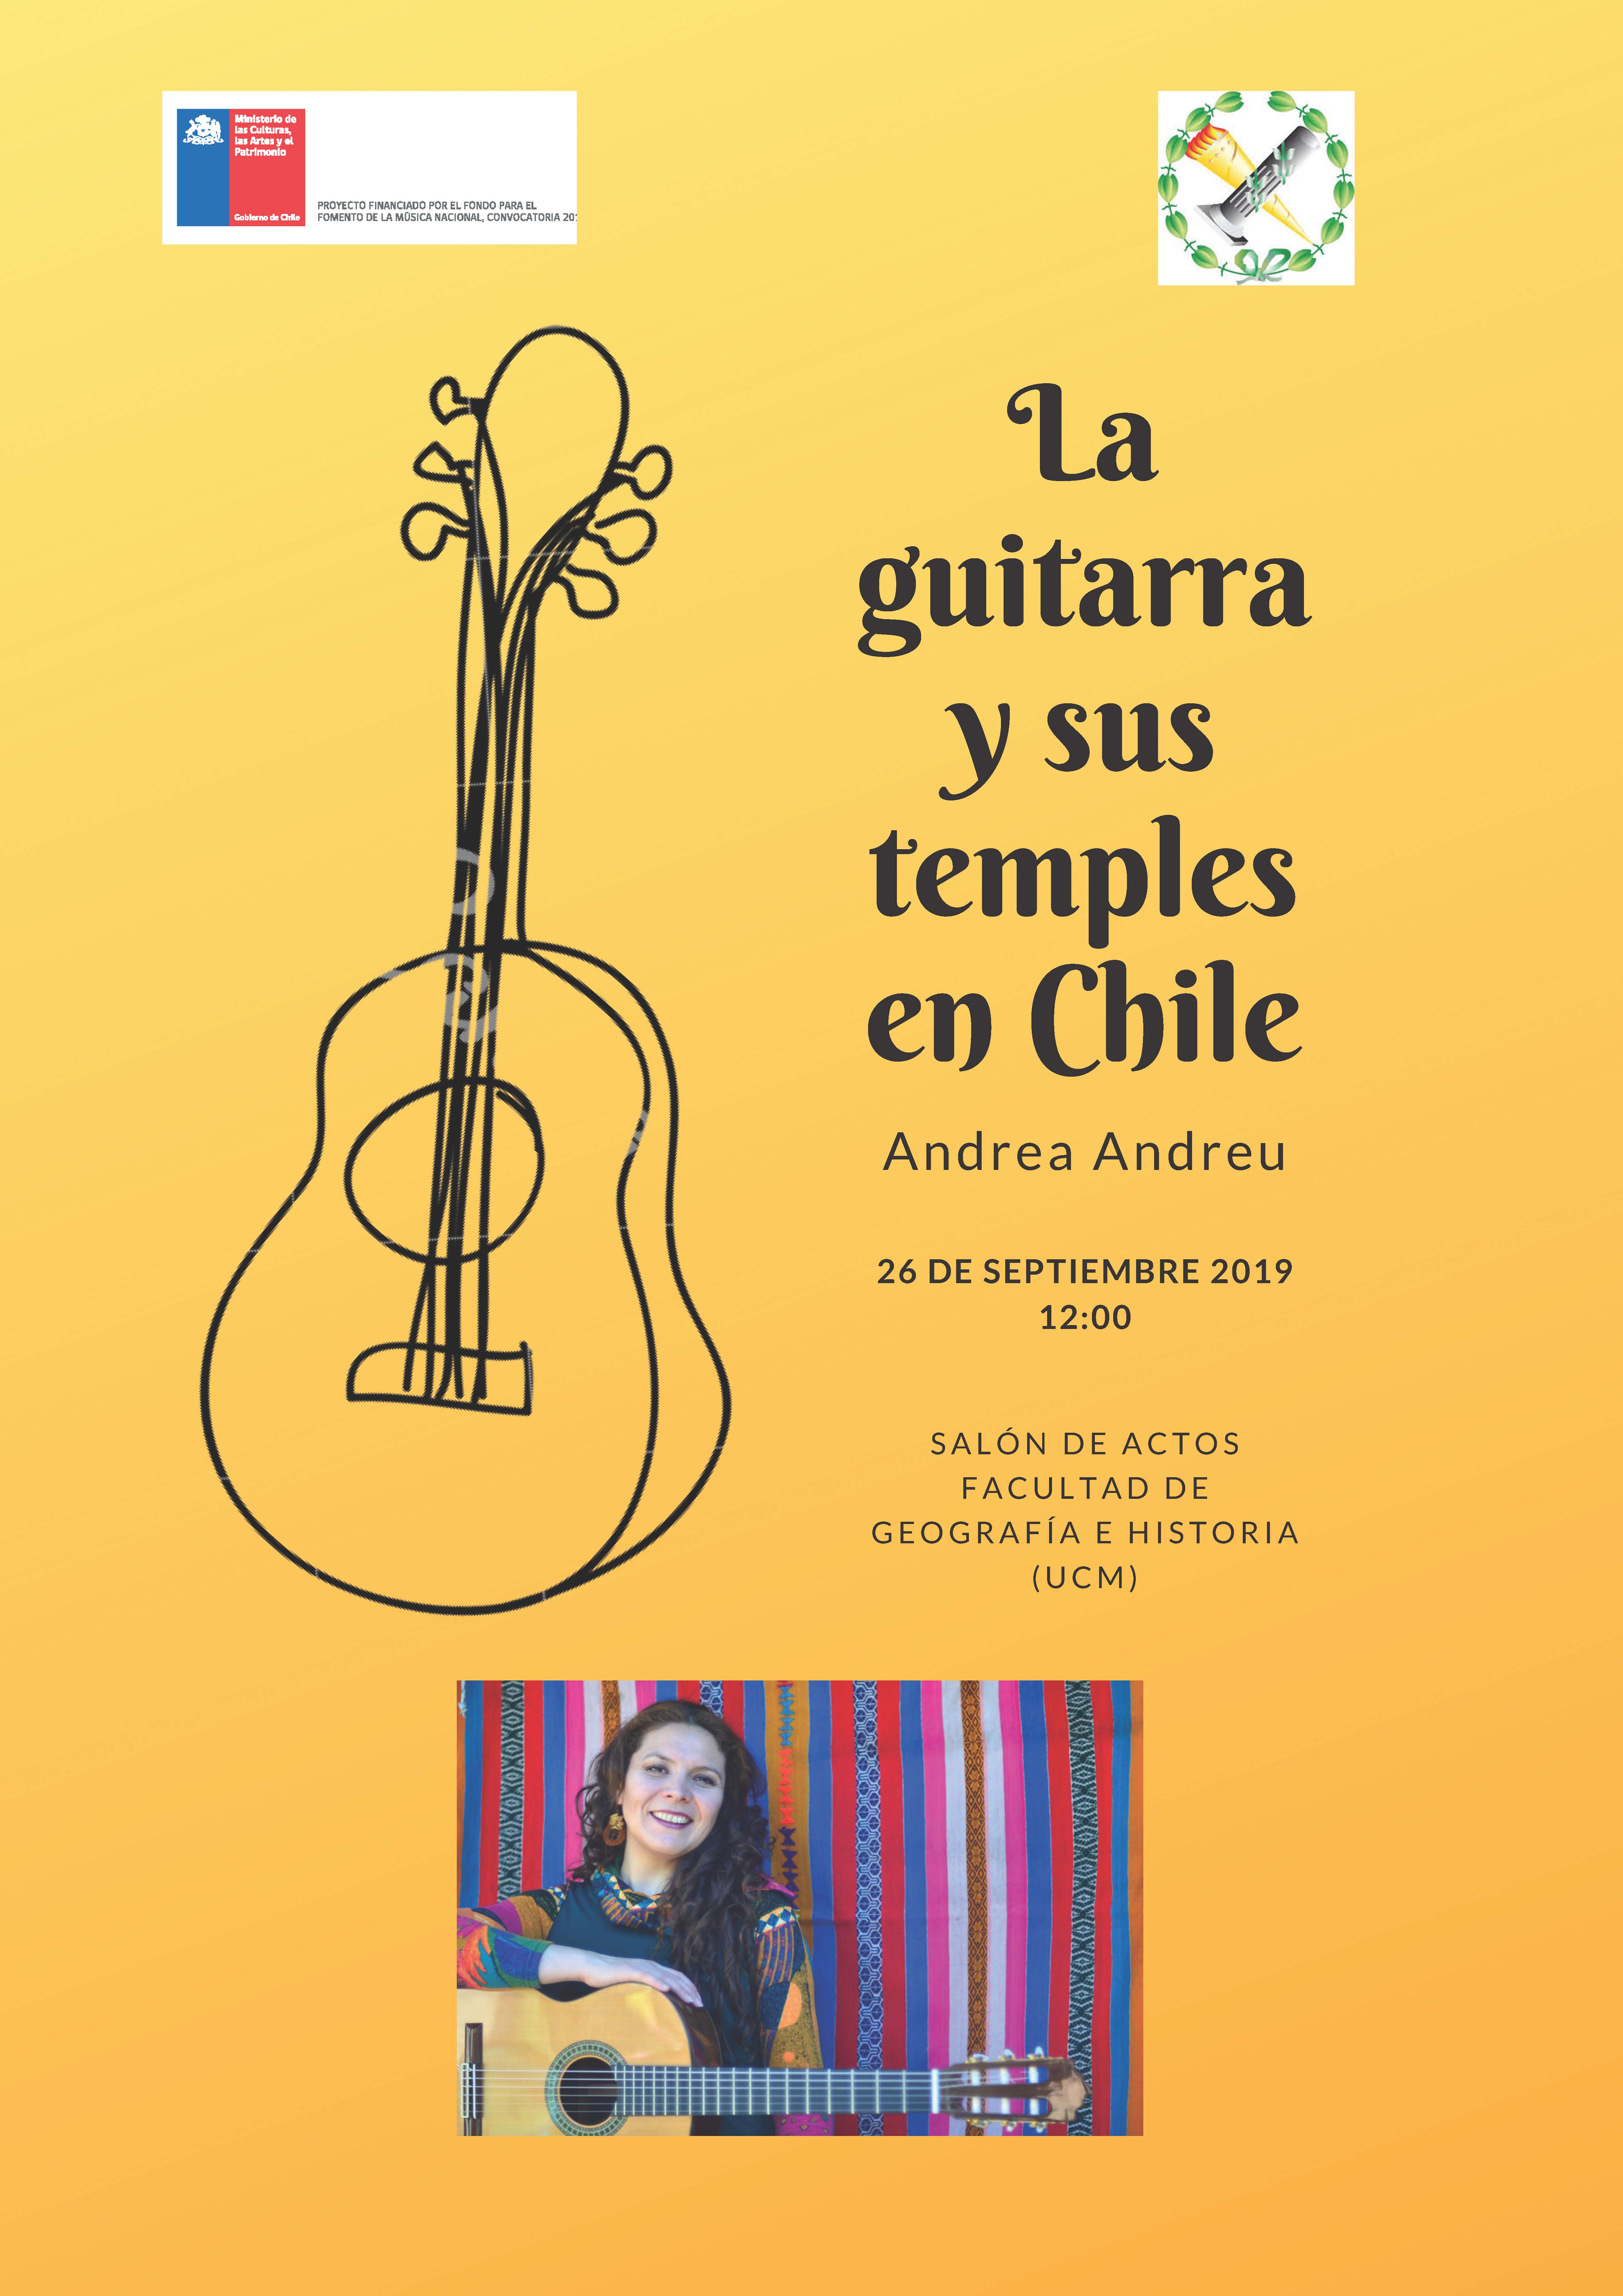 La guitarra y sus temples en Chile